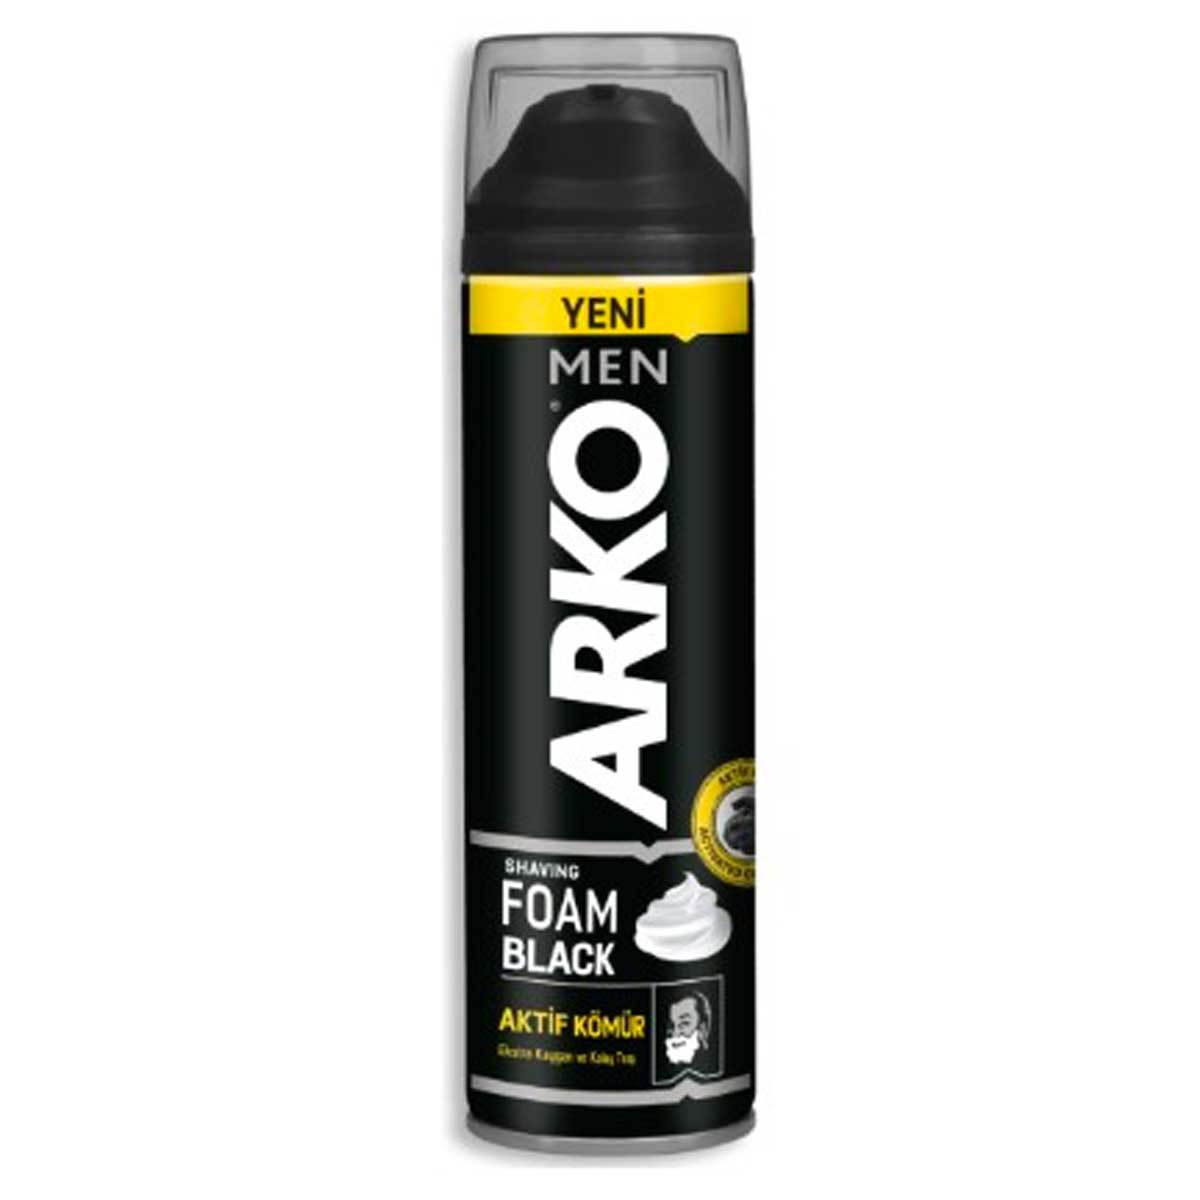 Arko Men Black Aktif Kömür Tıraş Köpüğü 200 ml